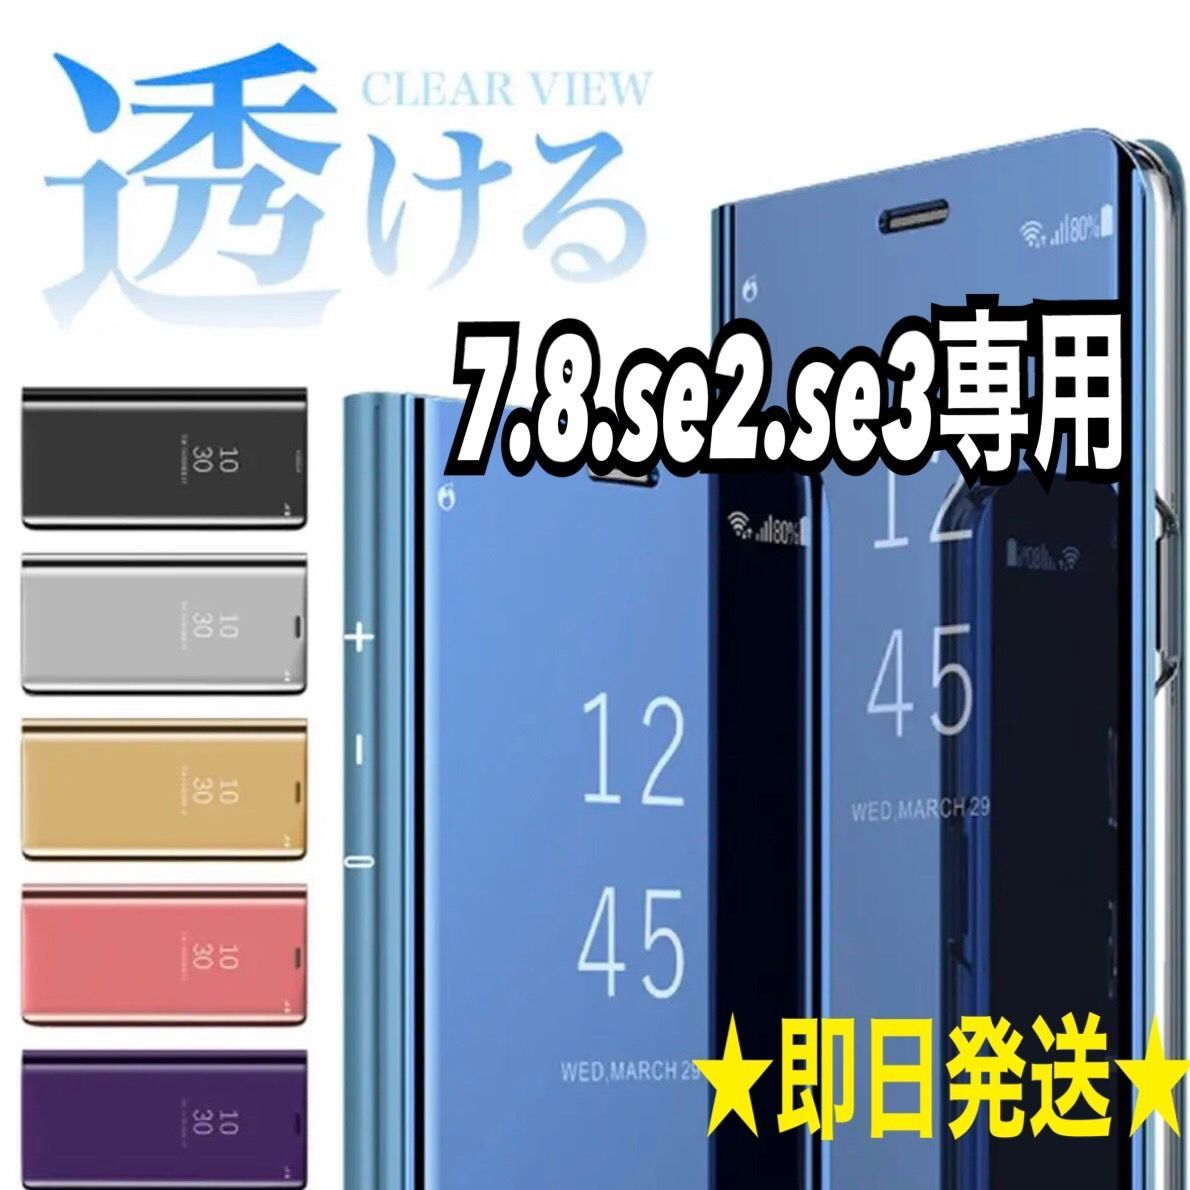 iphone 7.8.se2.se3専用ページ☆ミラー 手帳型 シンプル 軽量 スマホ